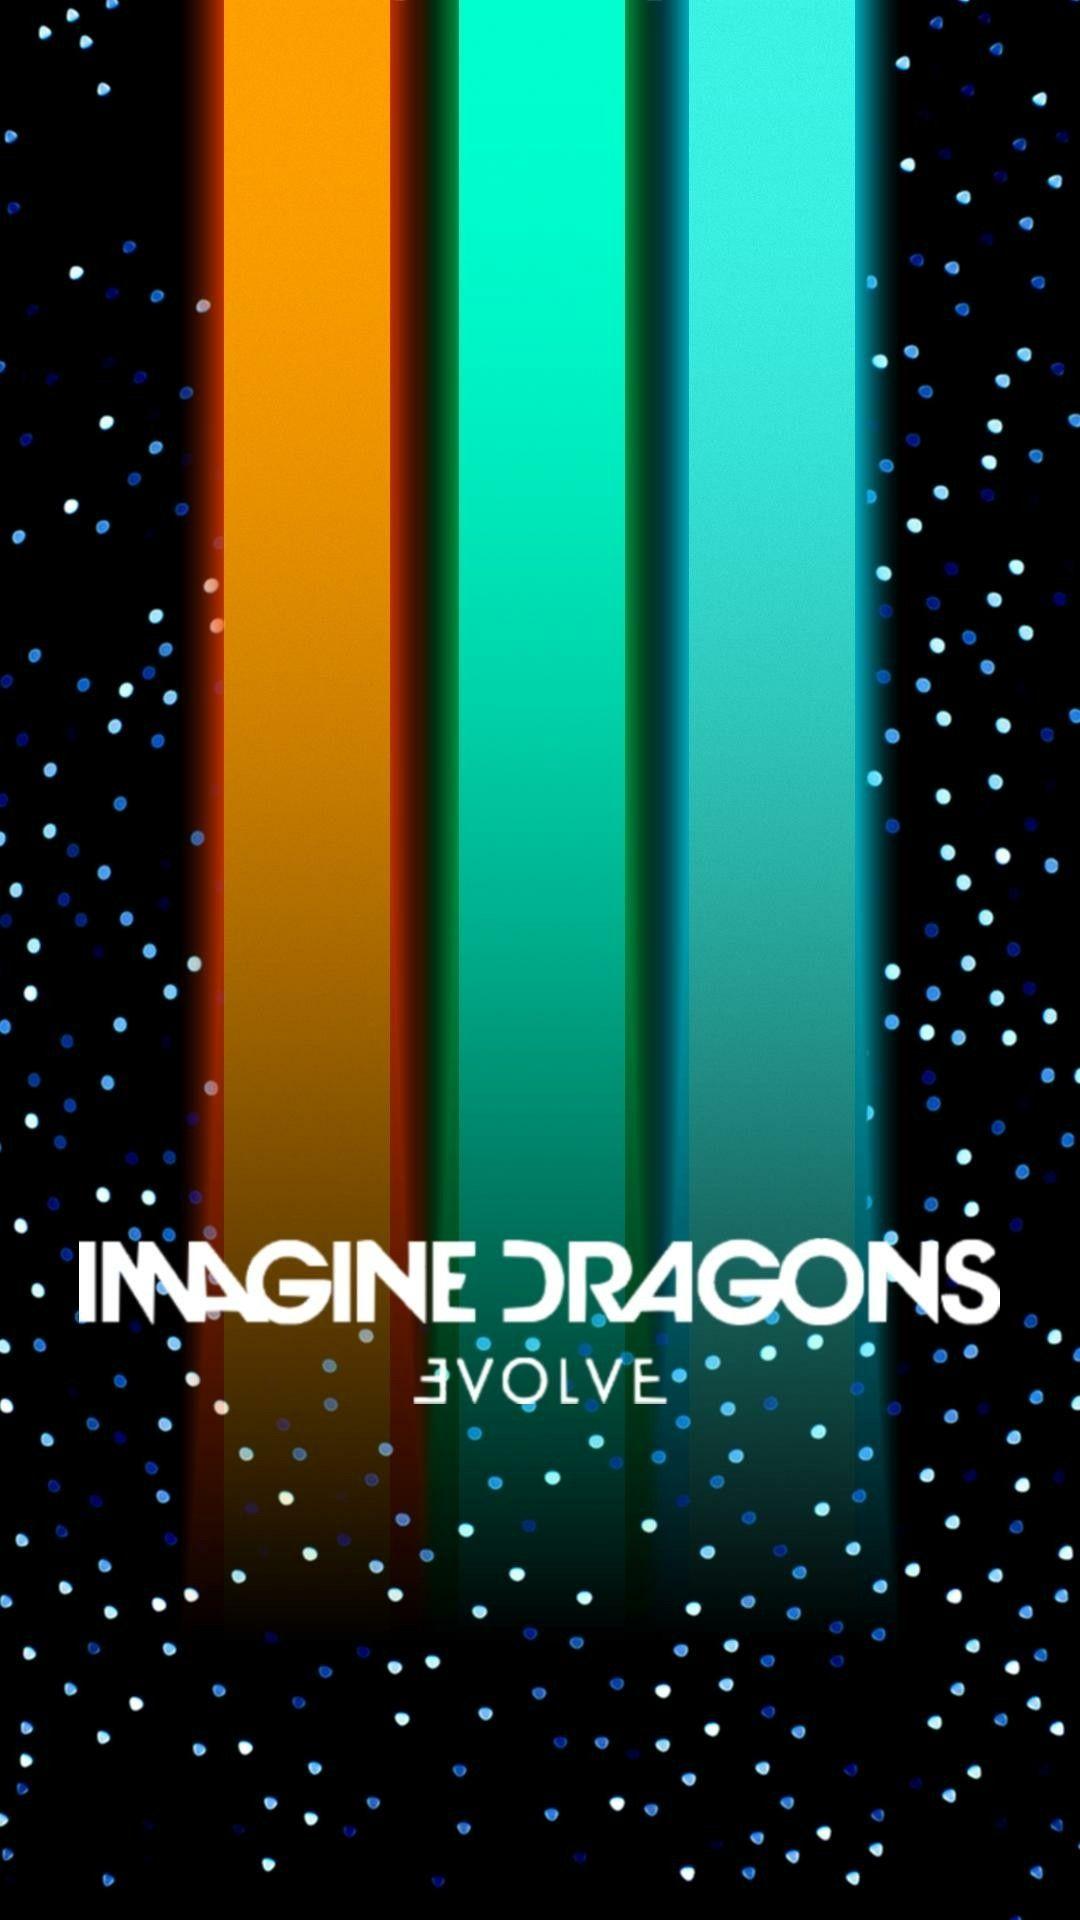 EvolvE. Imagine Dragons. Imagine Dragons, Imagine